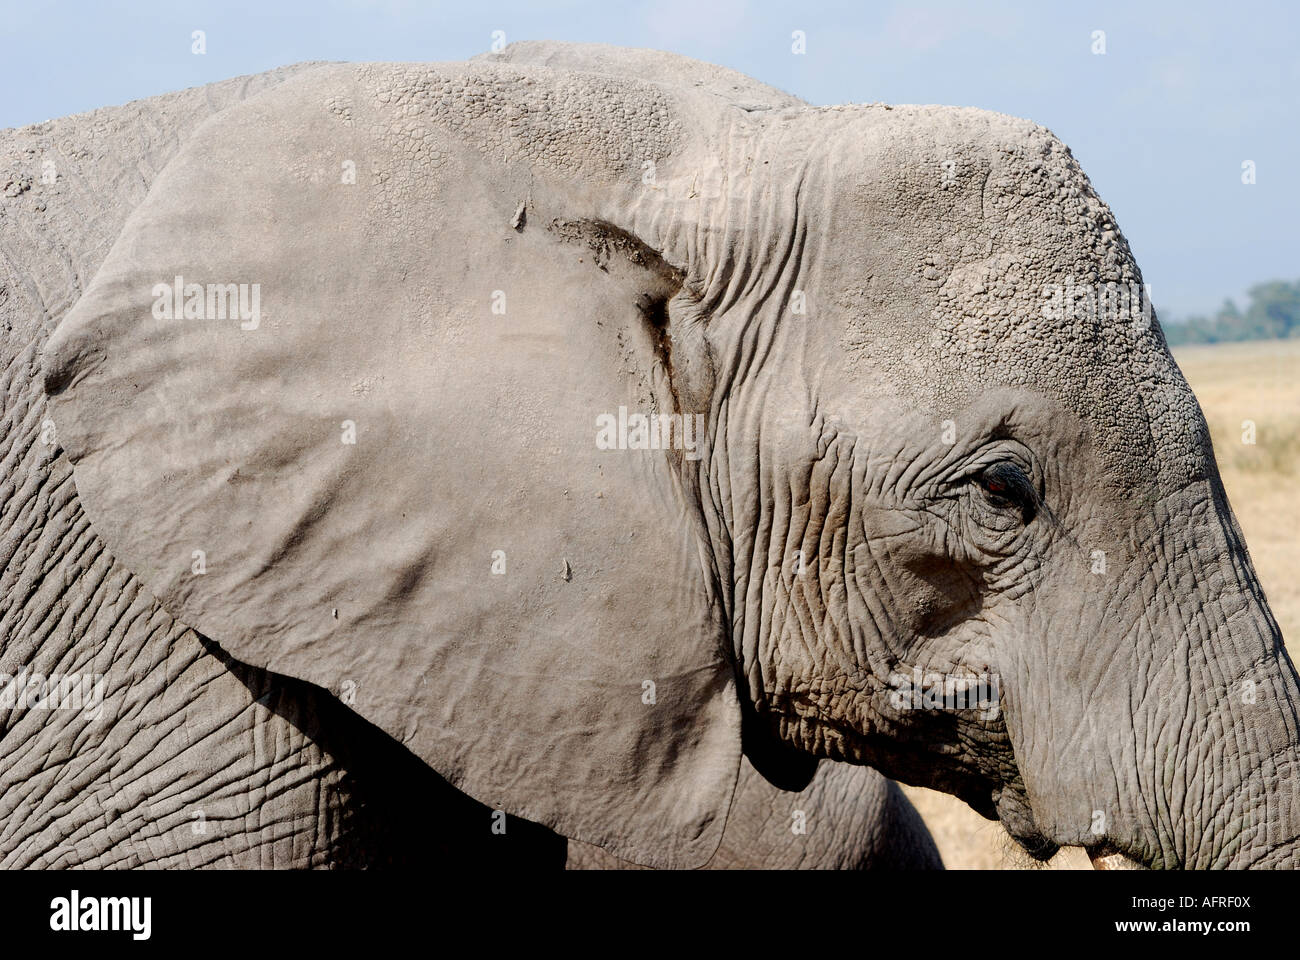 Close up portrait of a female elephant Amboseli National Park Kenya East Africa Stock Photo